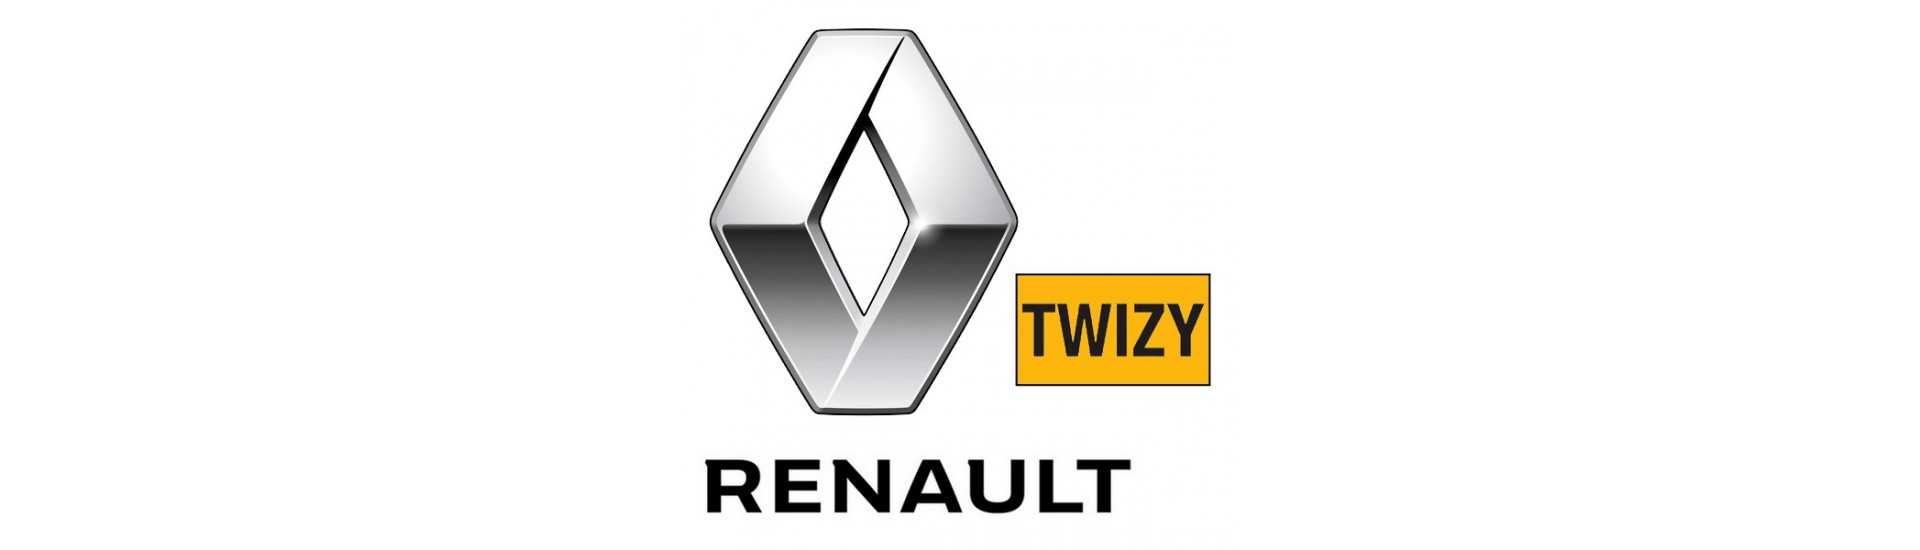 Compteur au meilleur prix pour voiture sans permis Renault Twizy